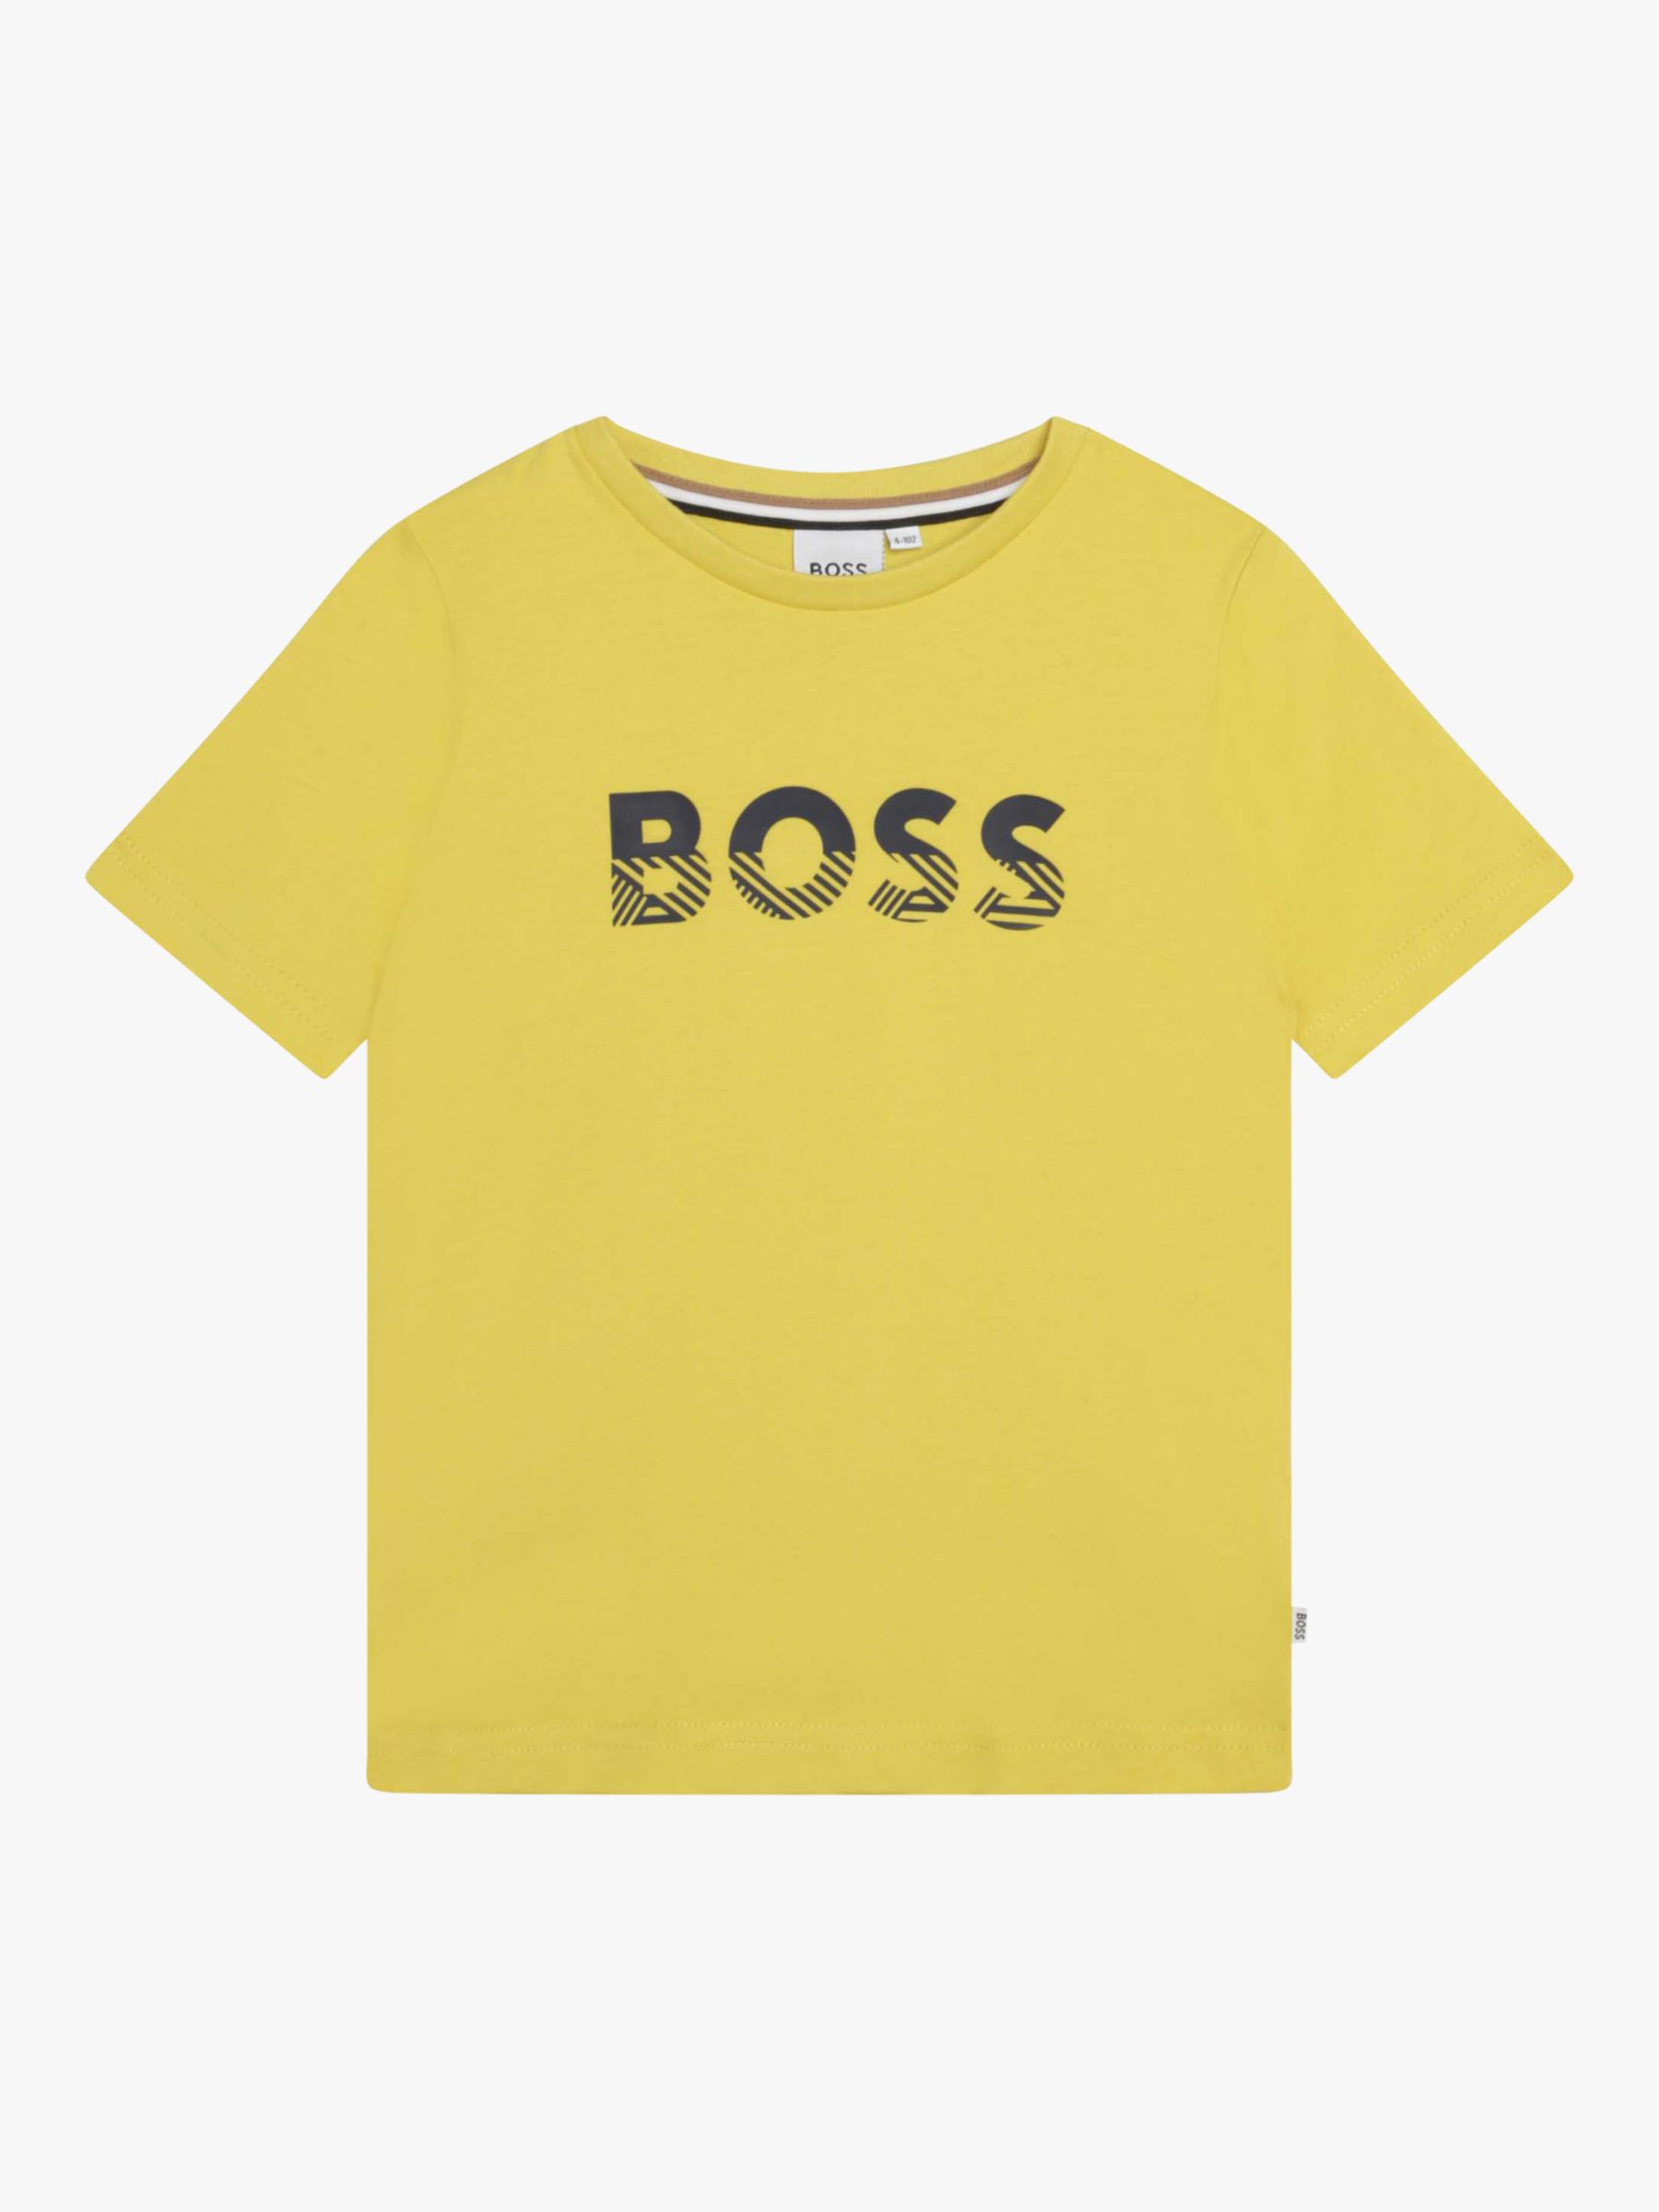 HUGO BOSS Kids' Slim Fit Stripe Logo T-Shirt, Yellow at John Lewis ...